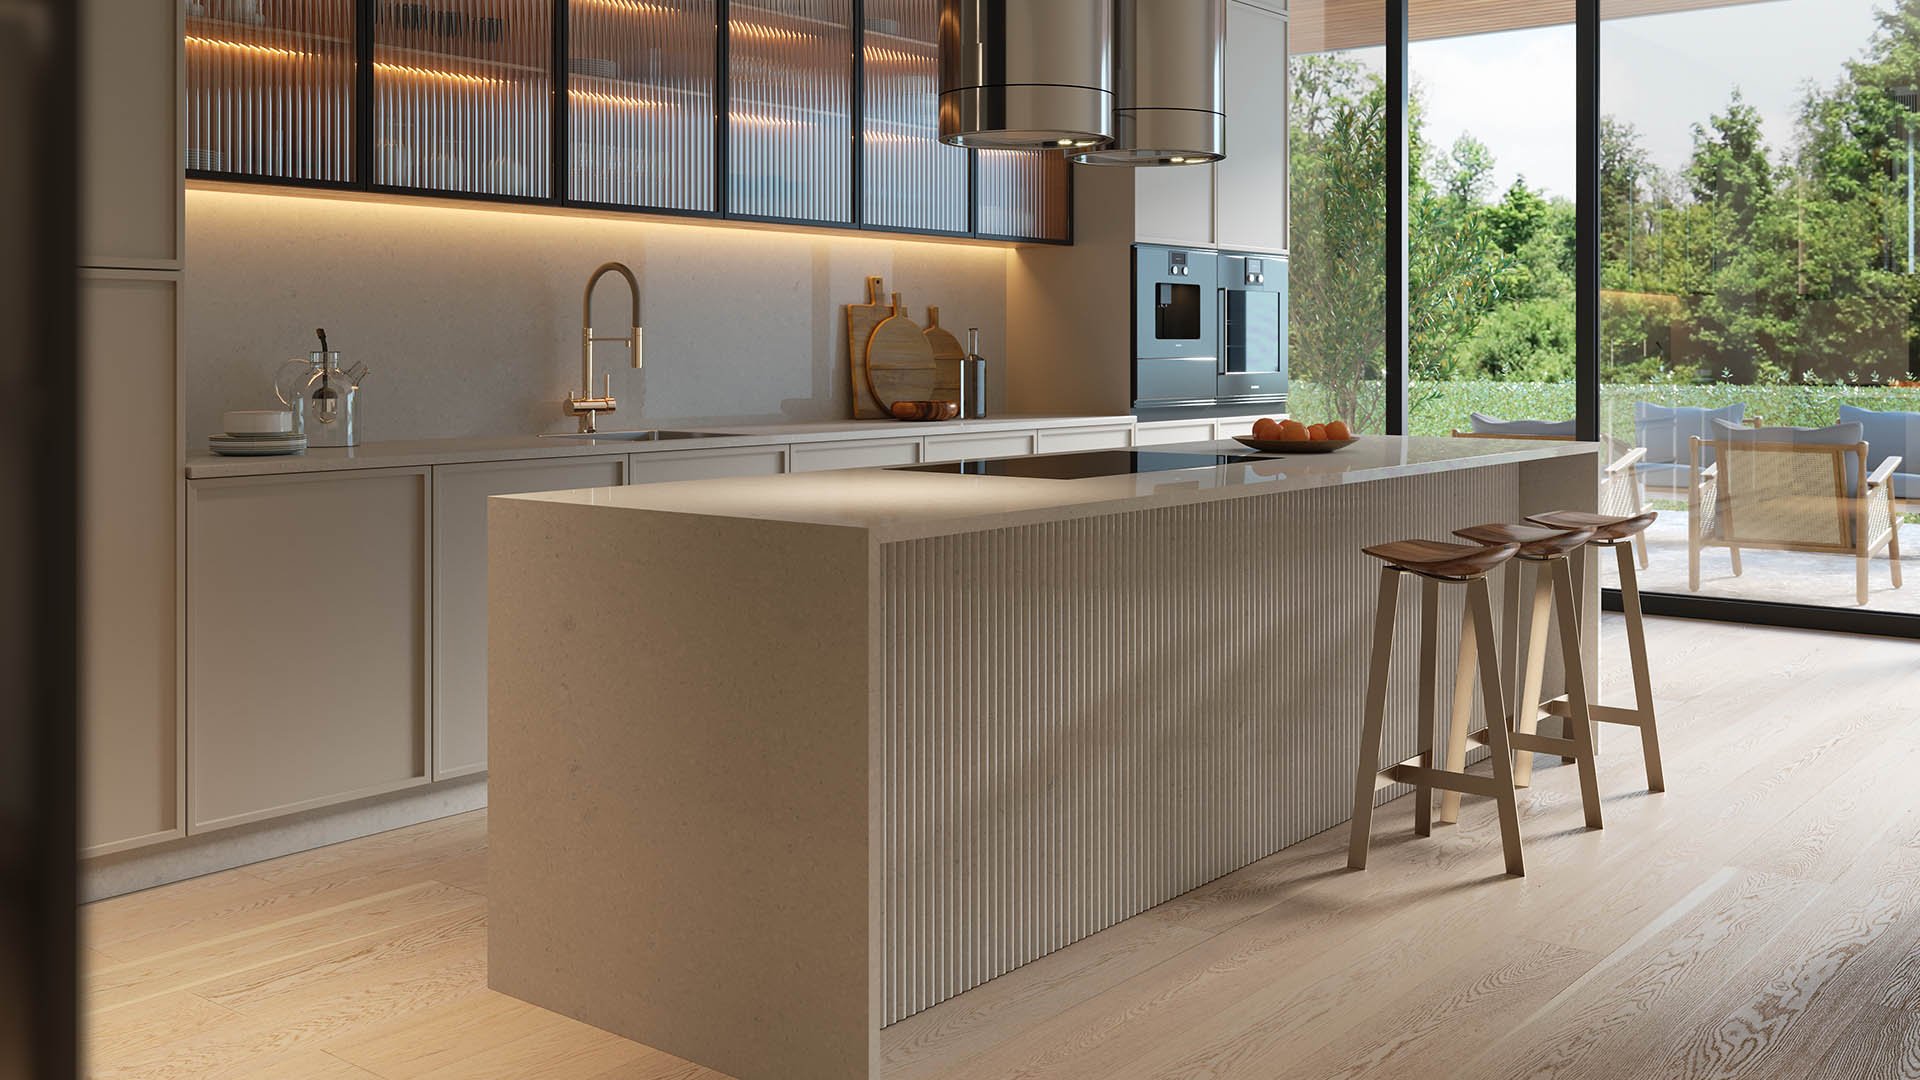 Caesarstone 4030 Pebble worktops in kitchen with bi-fold doors